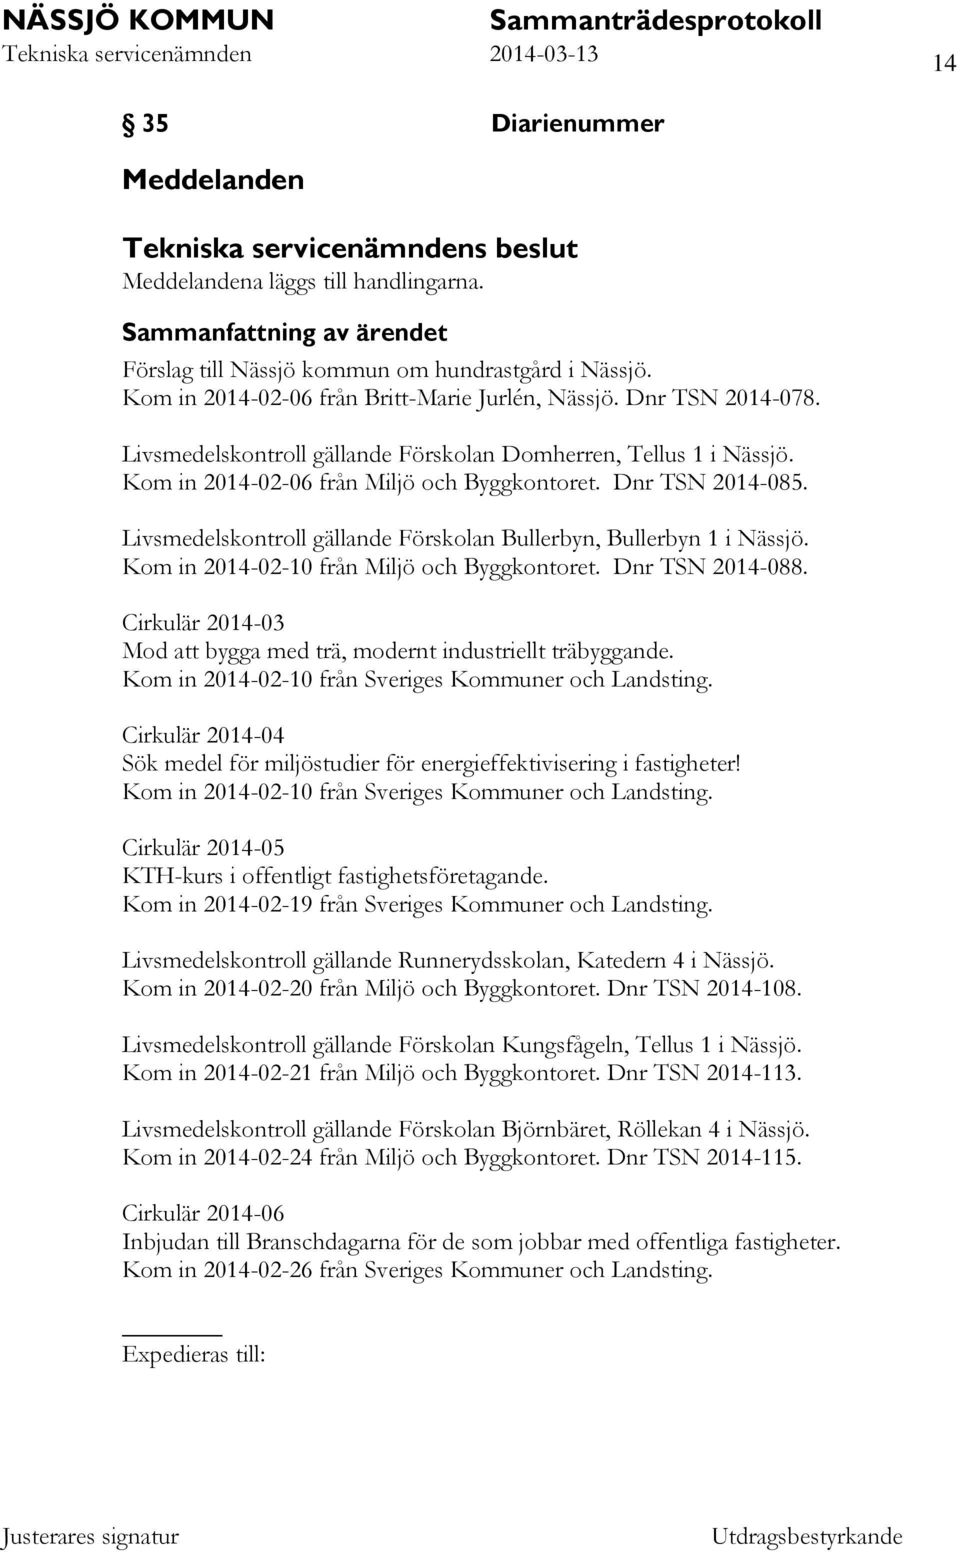 Livsmedelskontroll gällande Förskolan Bullerbyn, Bullerbyn 1 i Nässjö. Kom in 2014-02-10 från Miljö och Byggkontoret. Dnr TSN 2014-088.